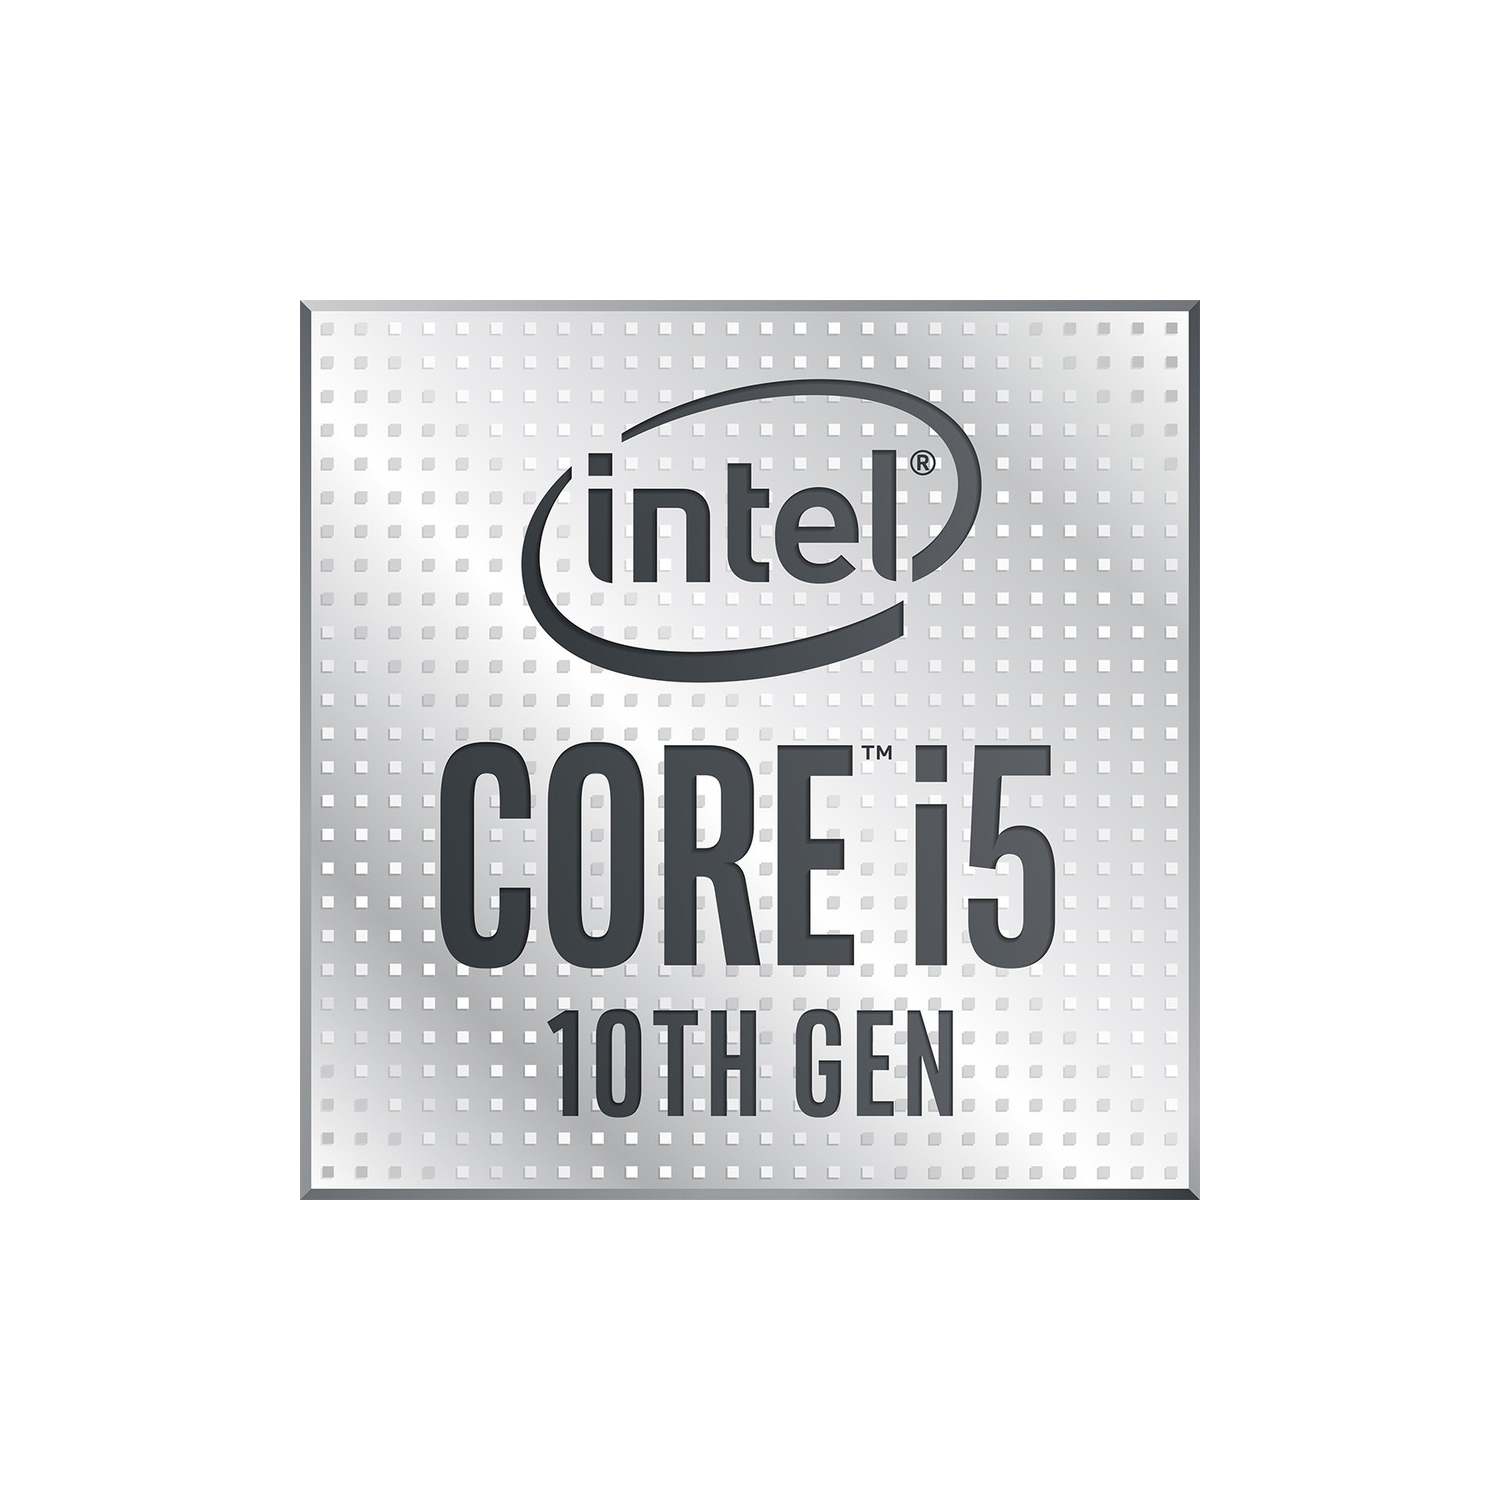 Intel Core i5 Hexa-core i5-10600 3.30 GHz Desktop Processor BX8070110600